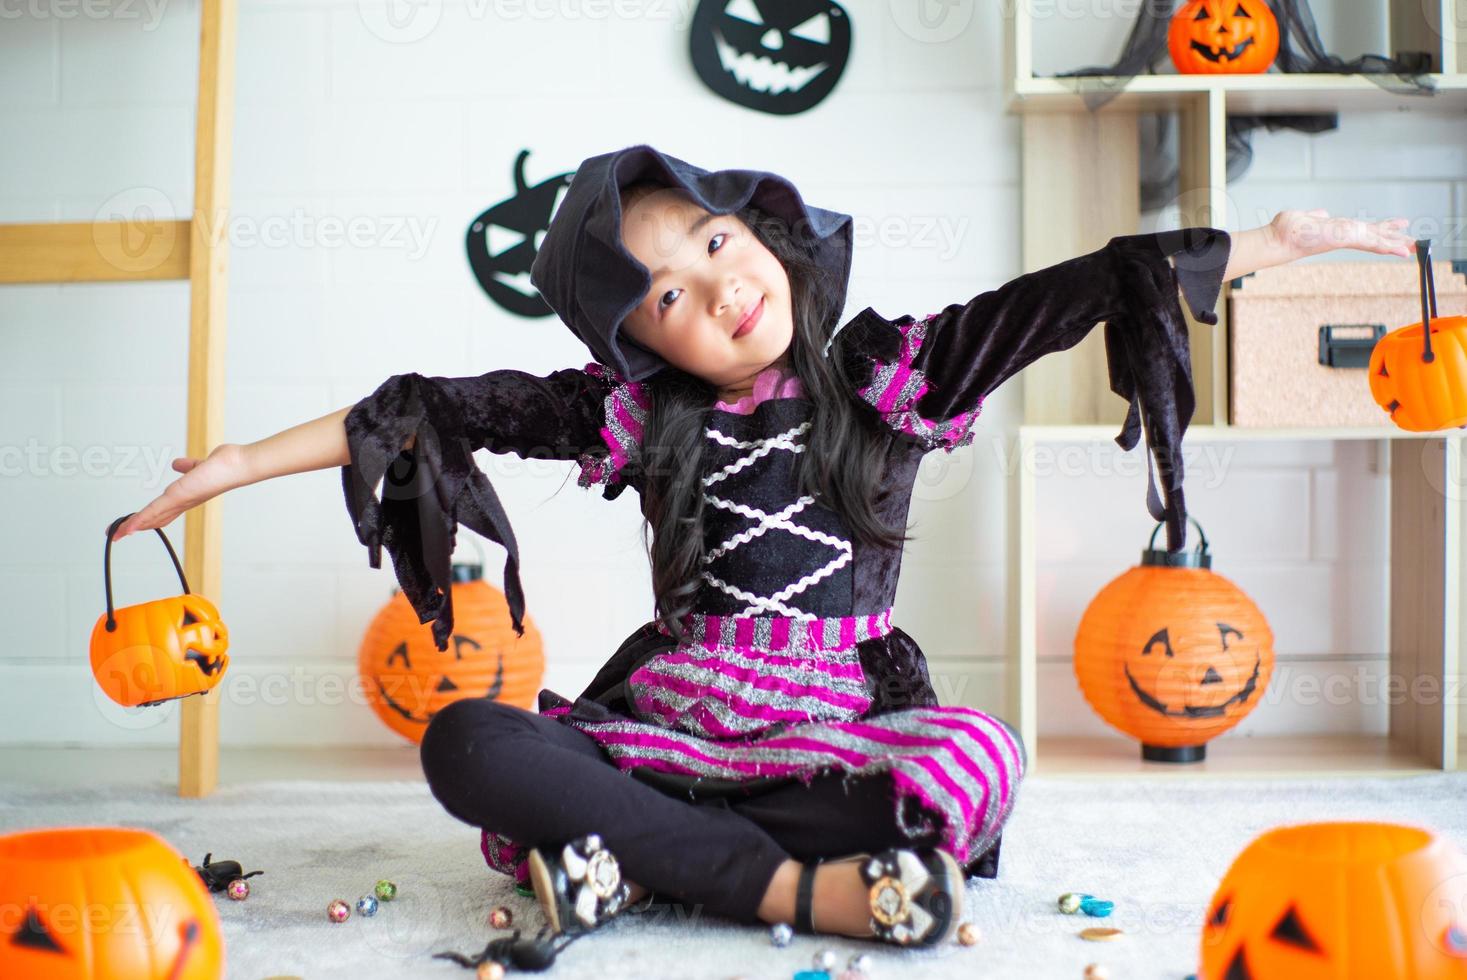 portrait de petite fille avec une robe de sorcière joue dans la chambre décorée au festival d'halloween photo